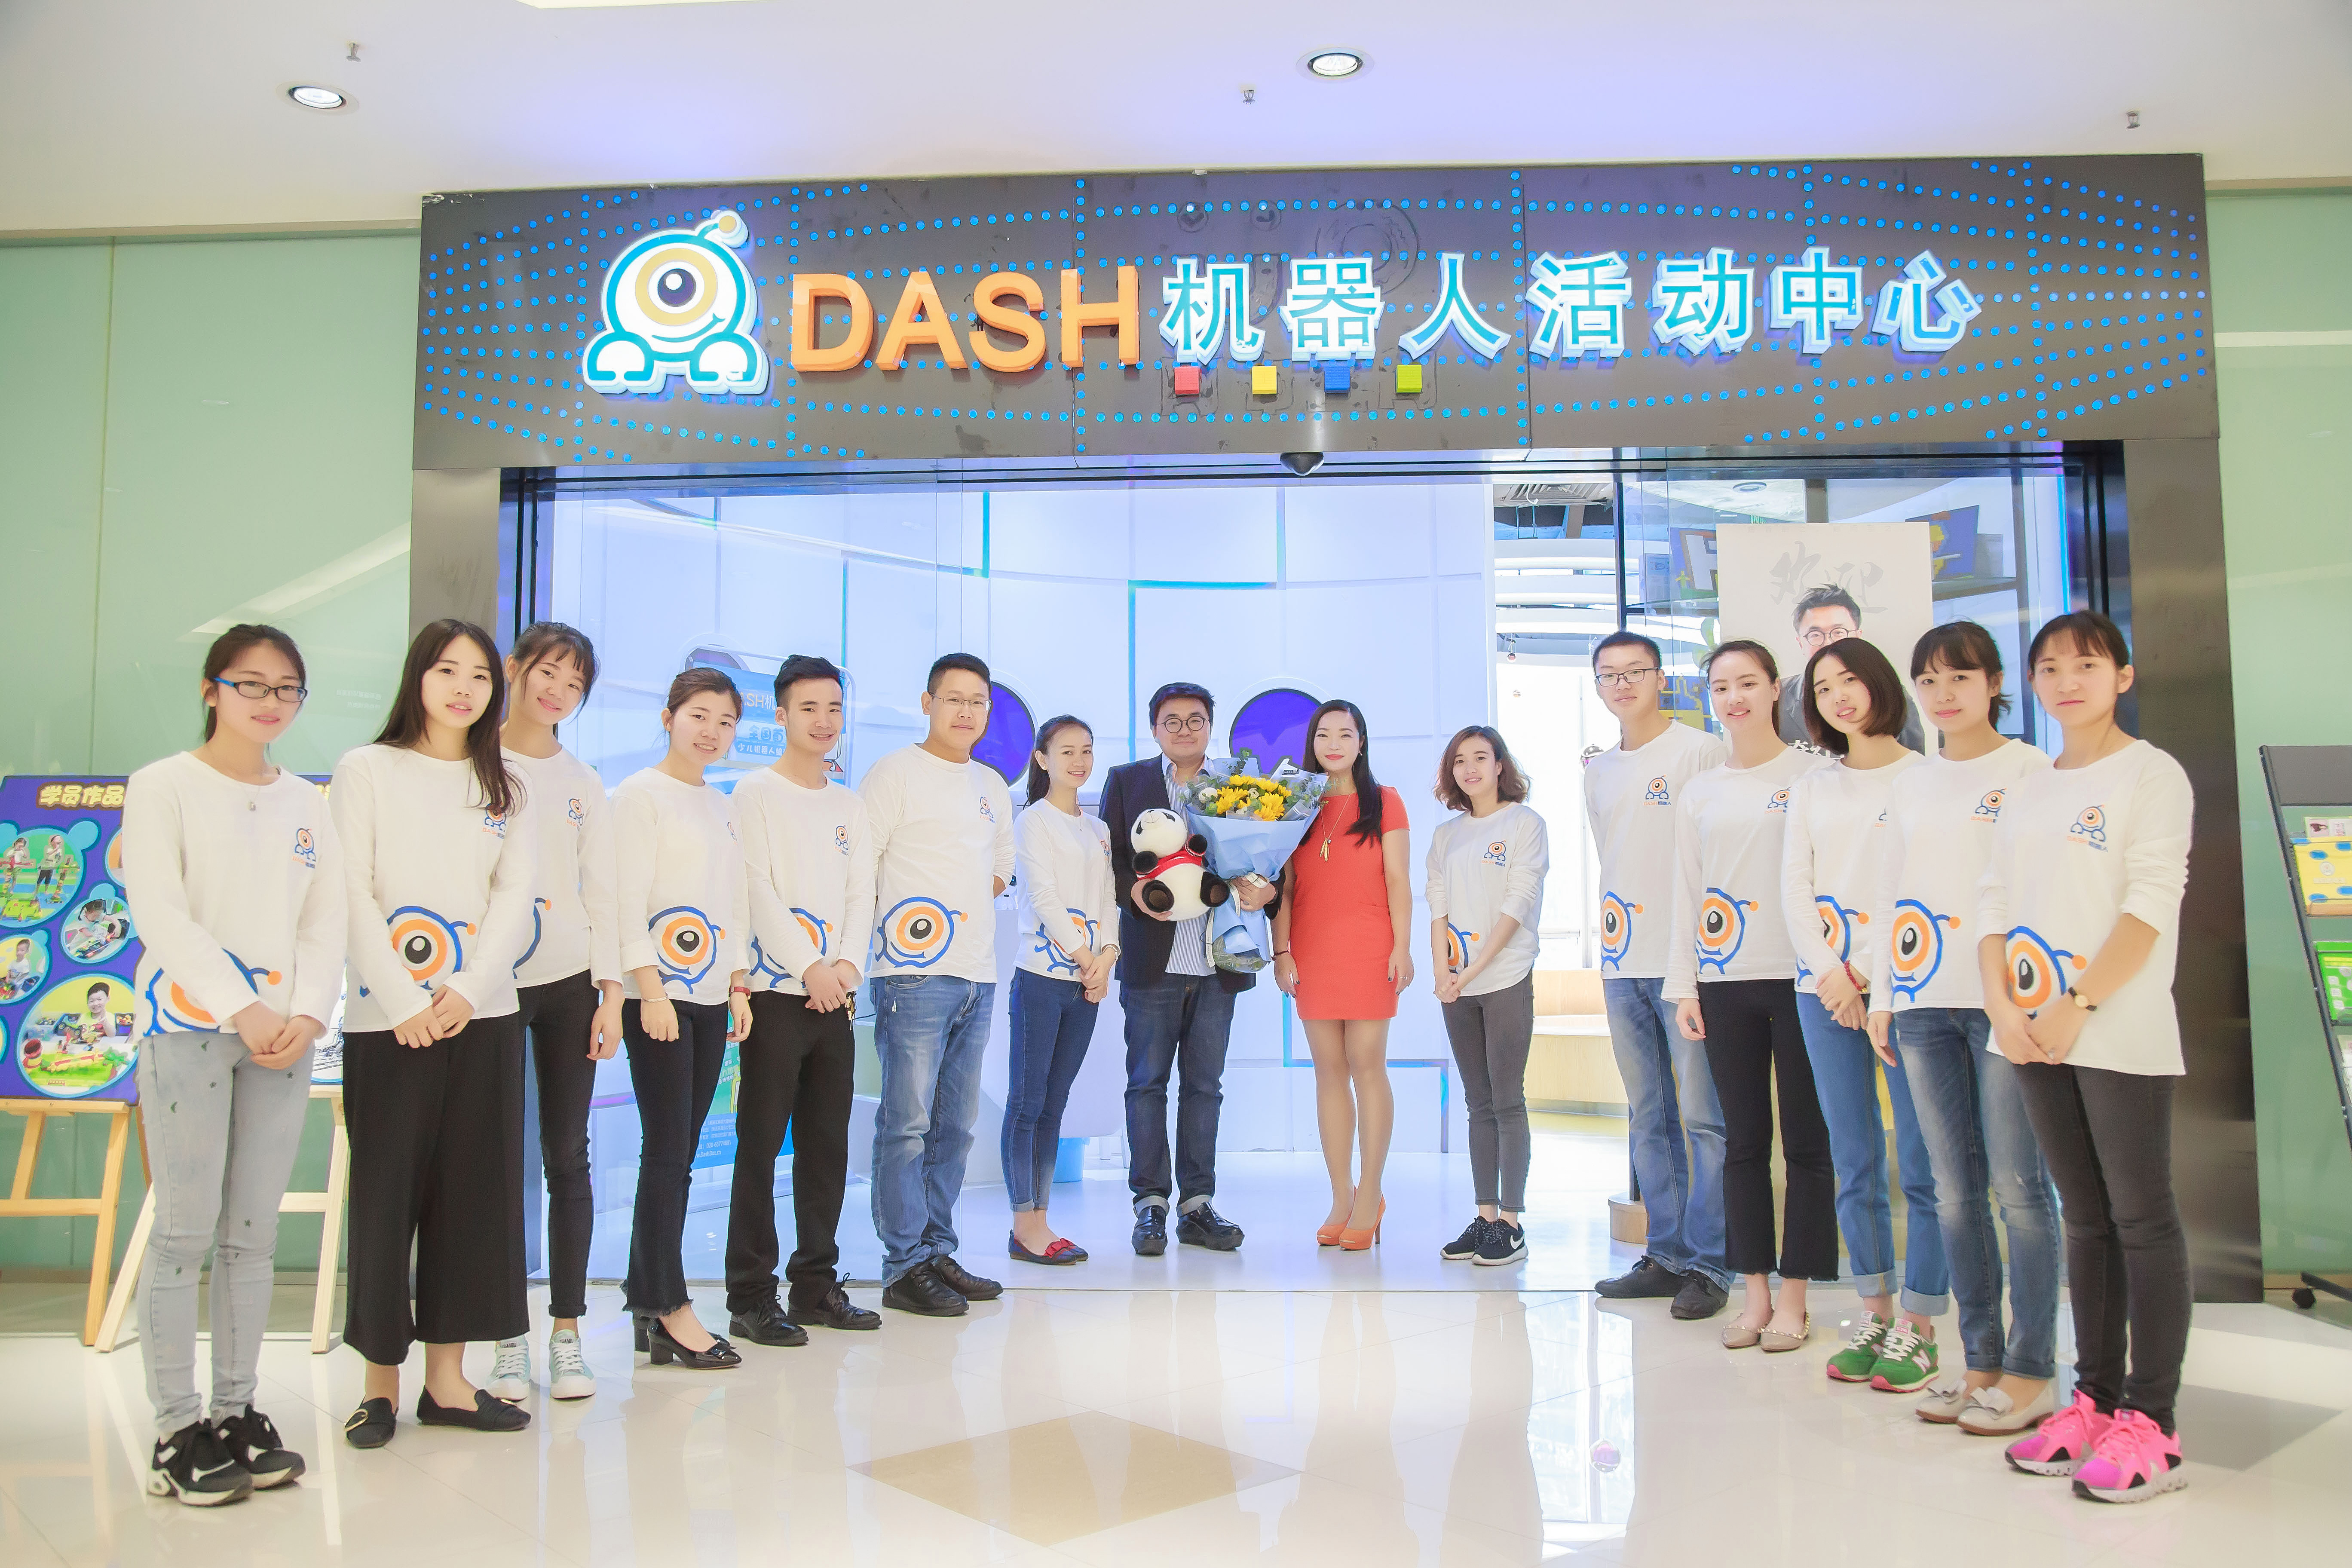 dash机器人活动中心 (wonder workshop)